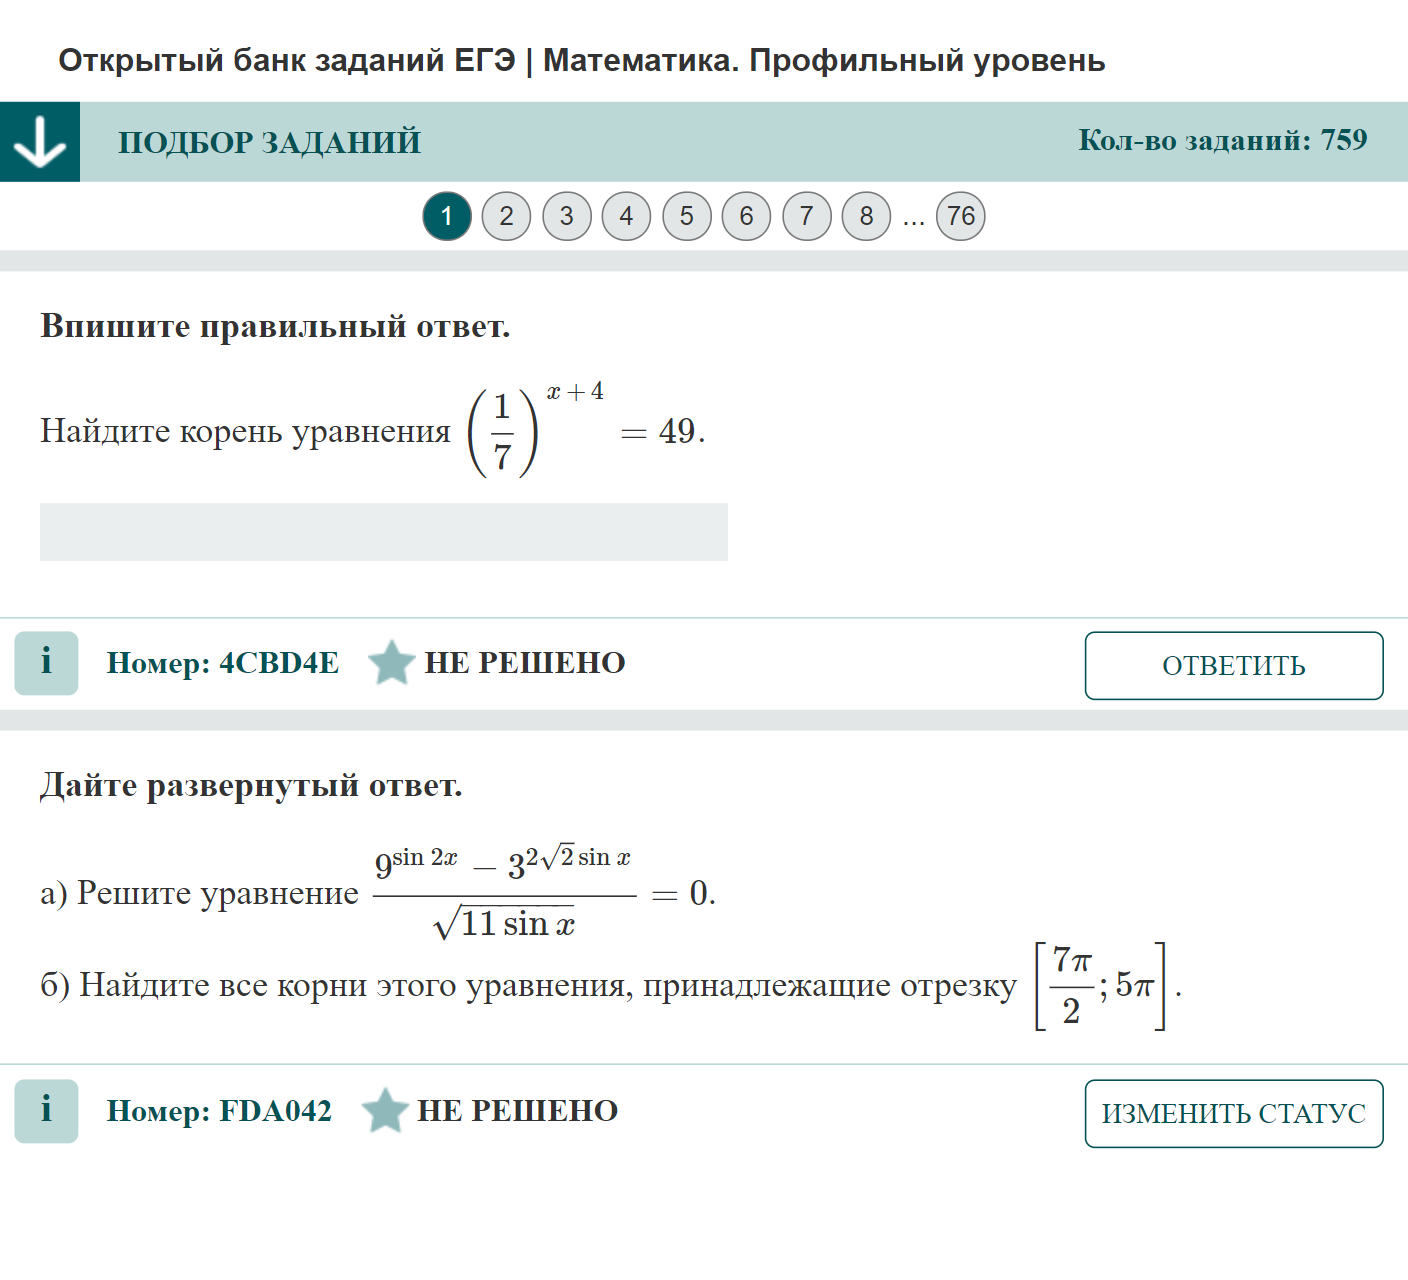 Пример задания ЕГЭ по профильной математике. Источник: ege.fipi.ru